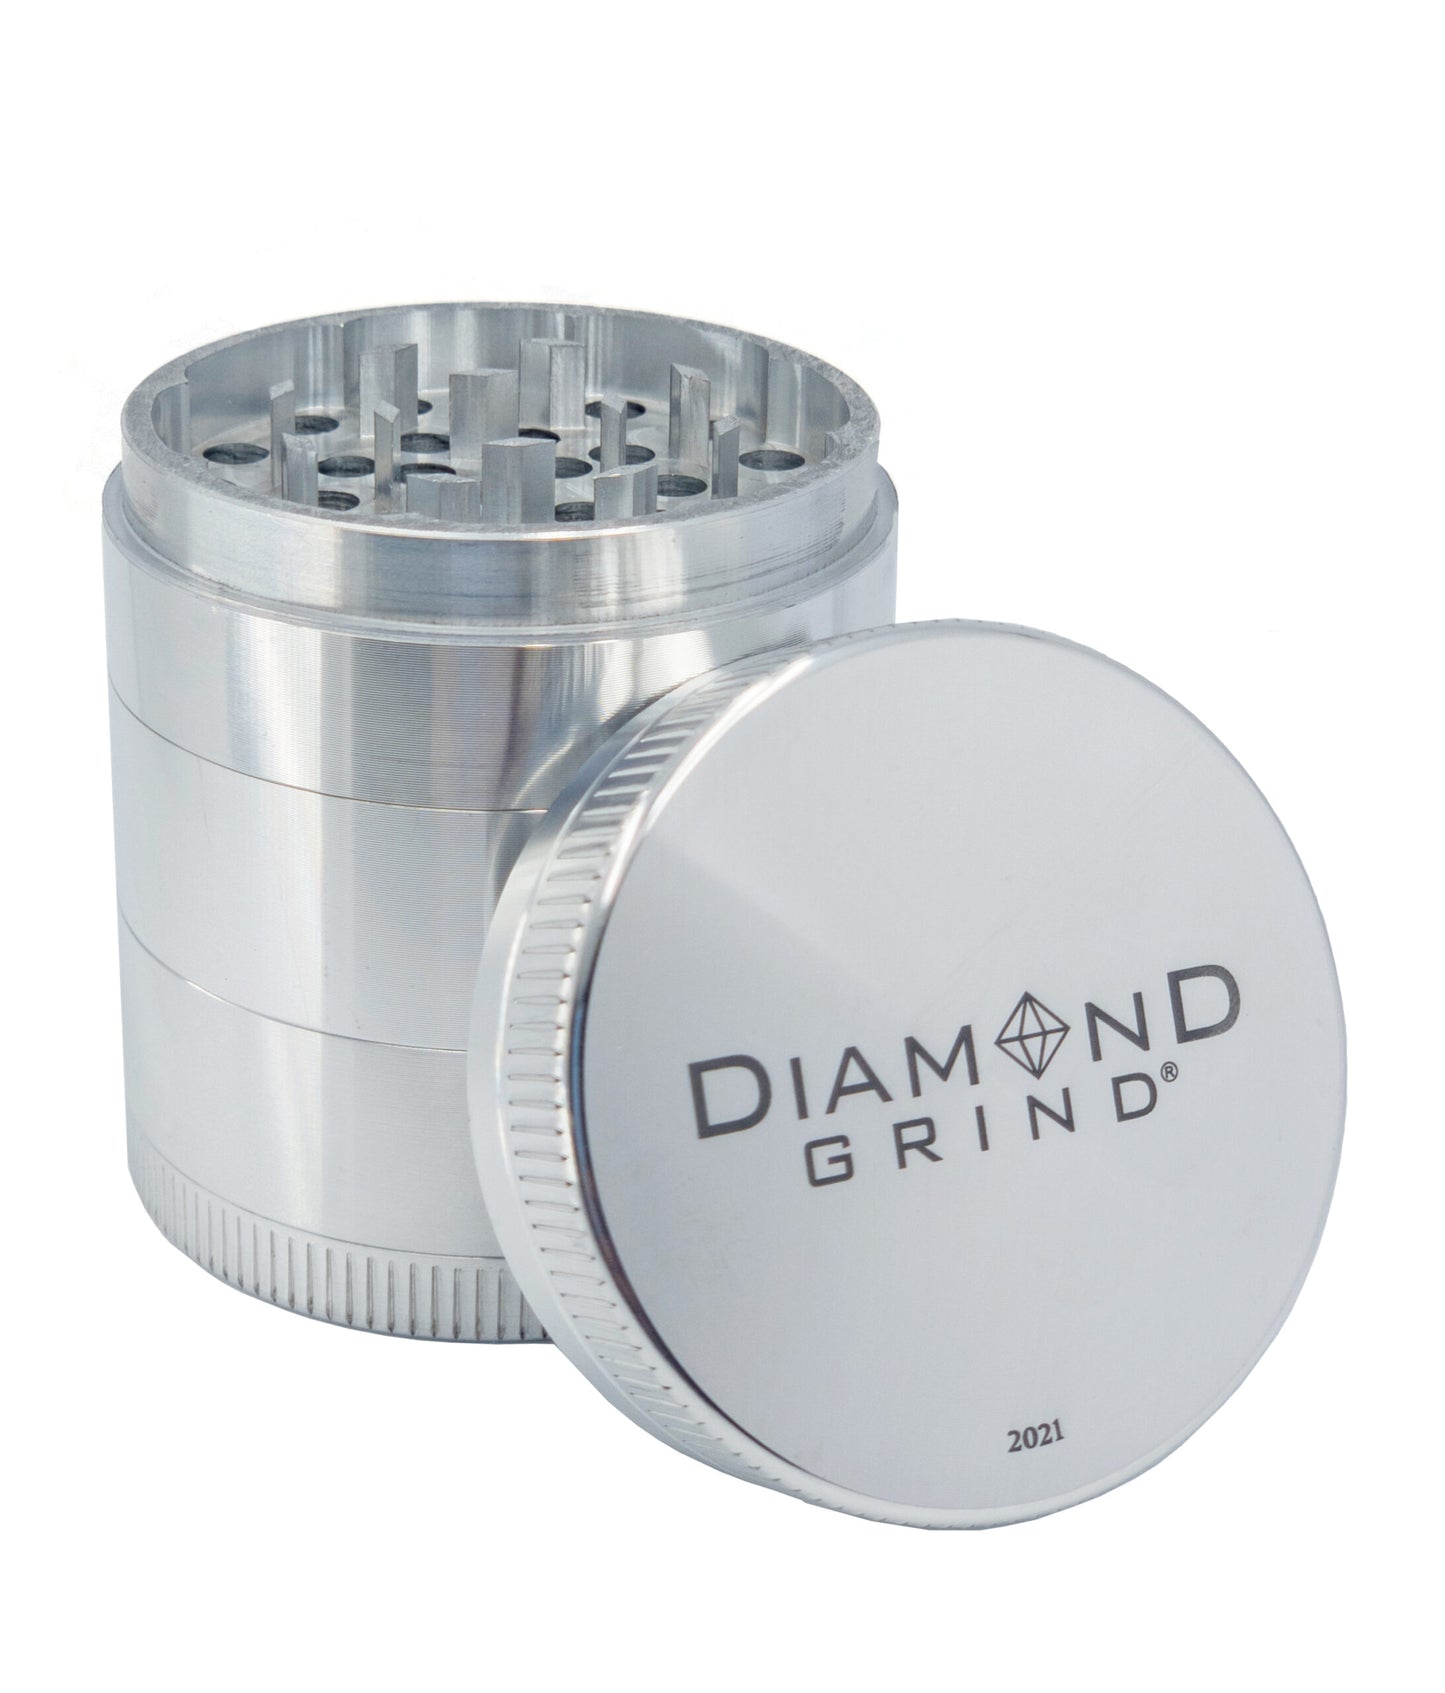 Diamond Grind Herb Grinder 5 Piece